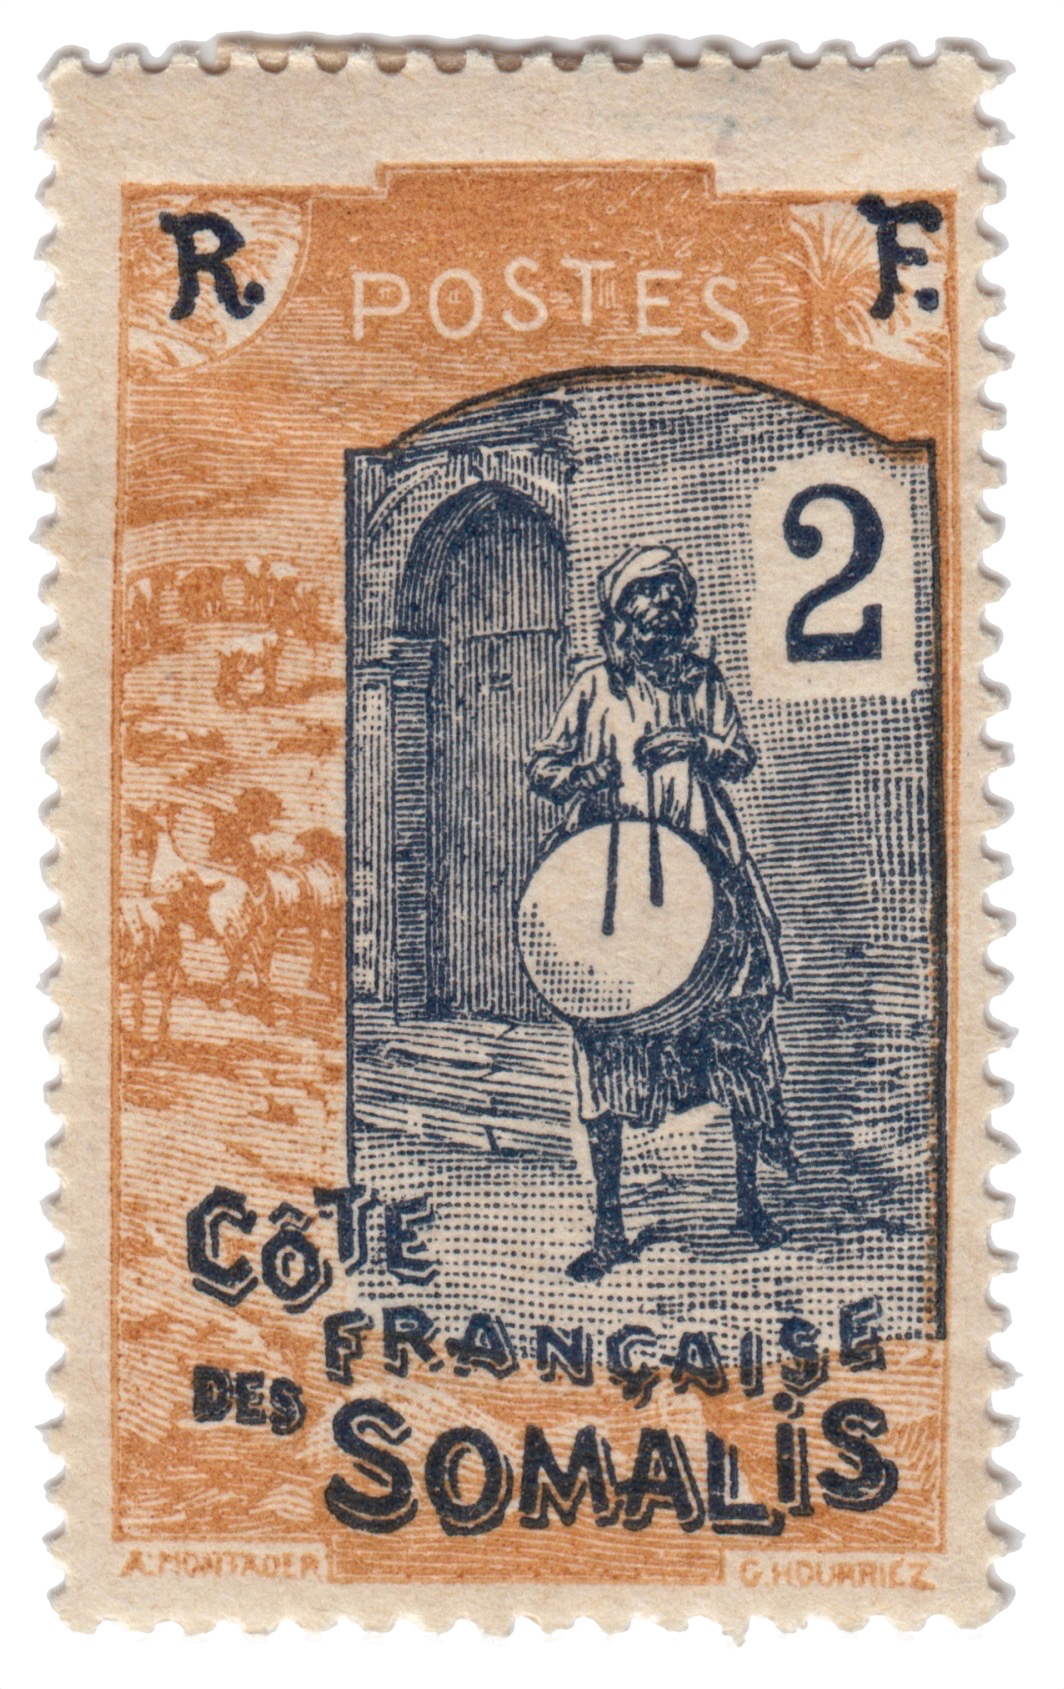 Stamp 2